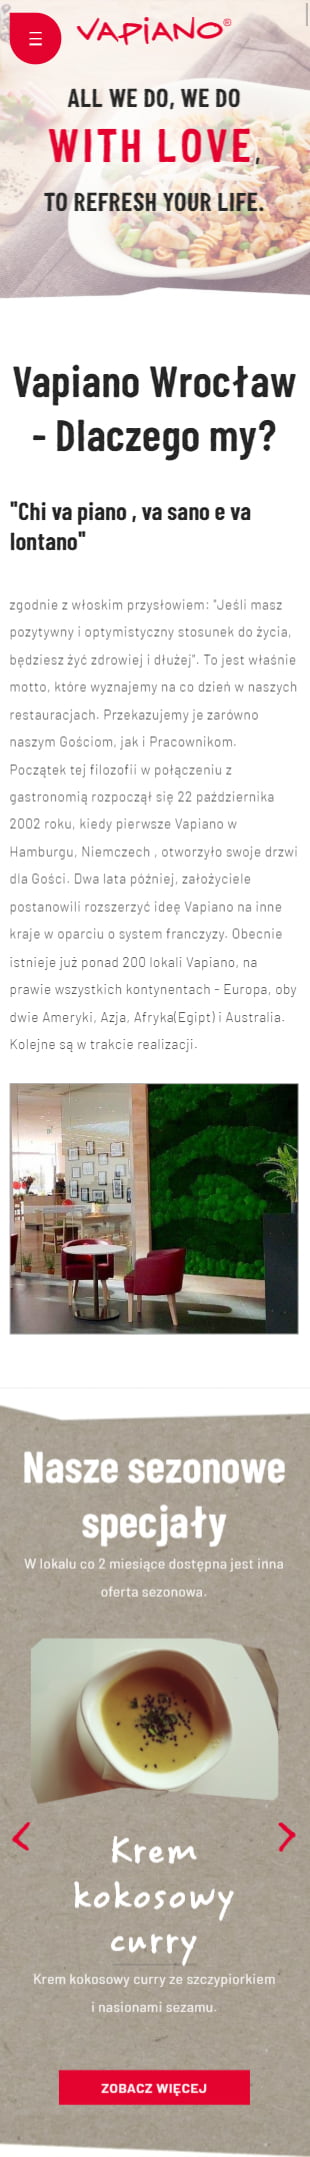 Realizacja agencji marketingowej RekinySukcesu.pl